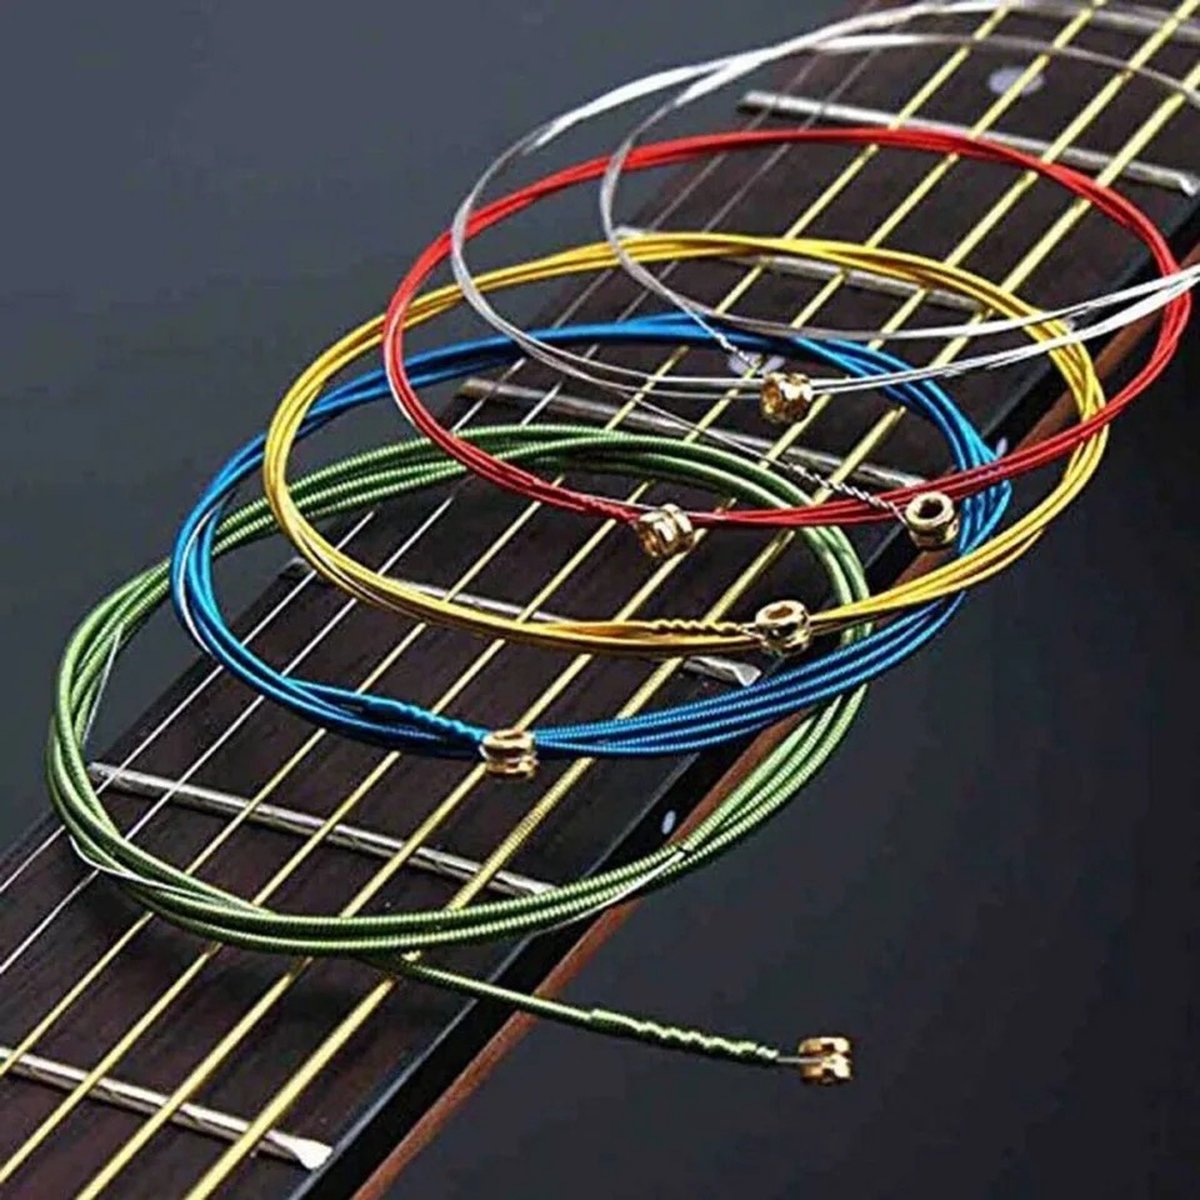 Jeu de cordes pour basse électrique, 4 cordes colorées, en acier